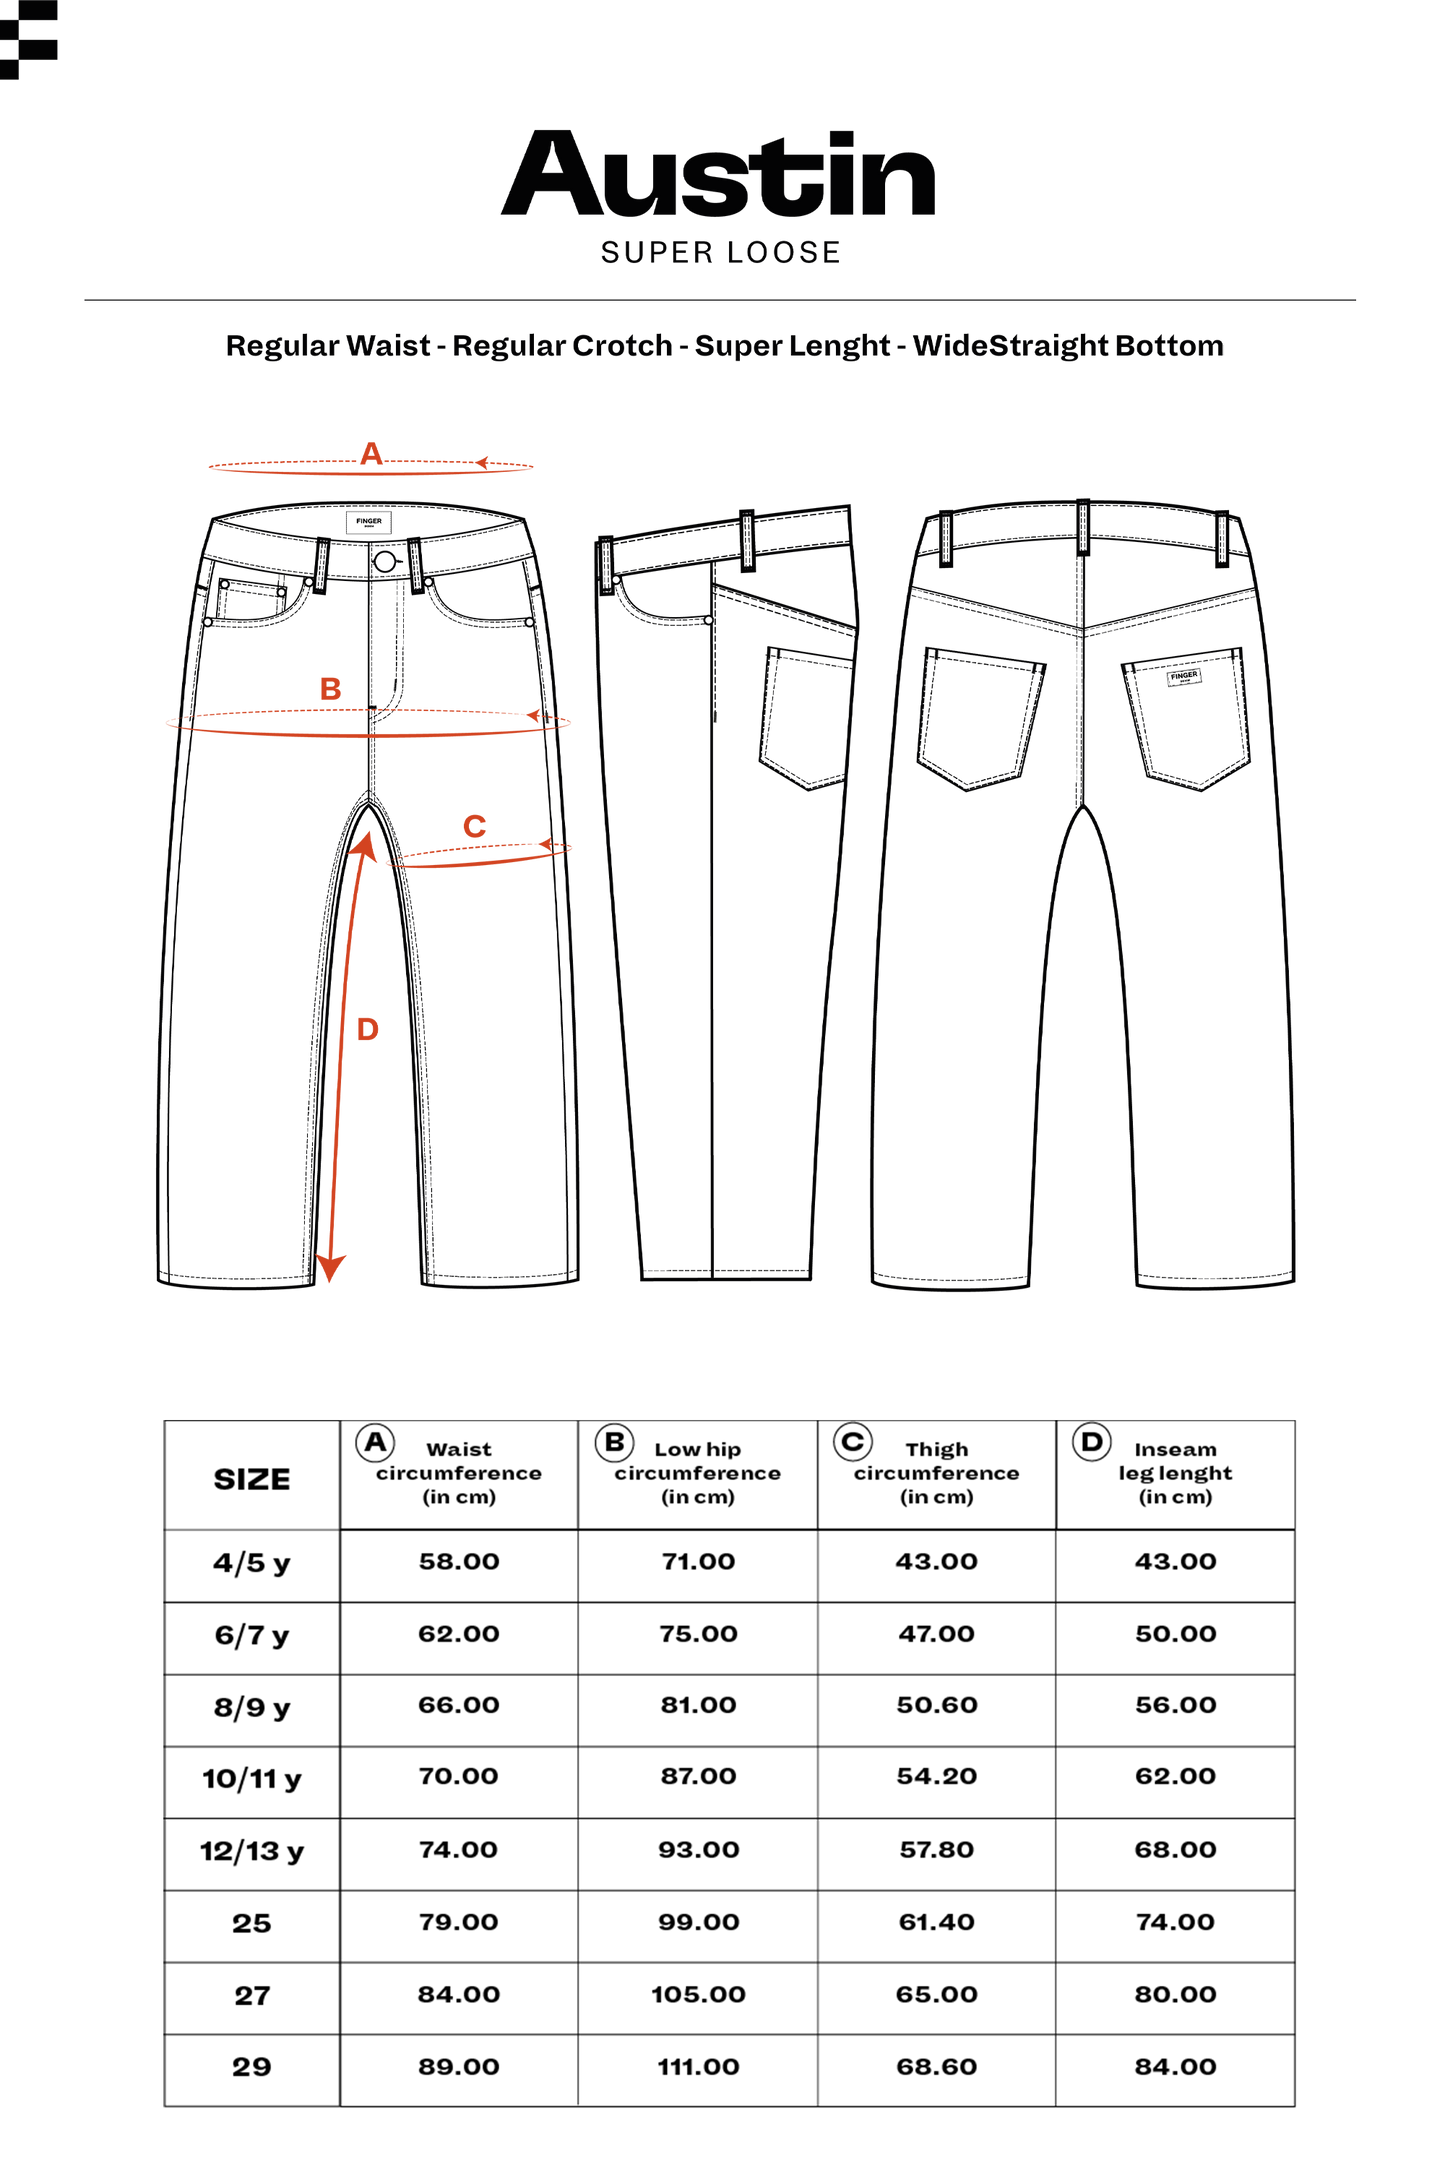 AUSTIN Black Denim - 5-Pocket Loose Fit Jeans